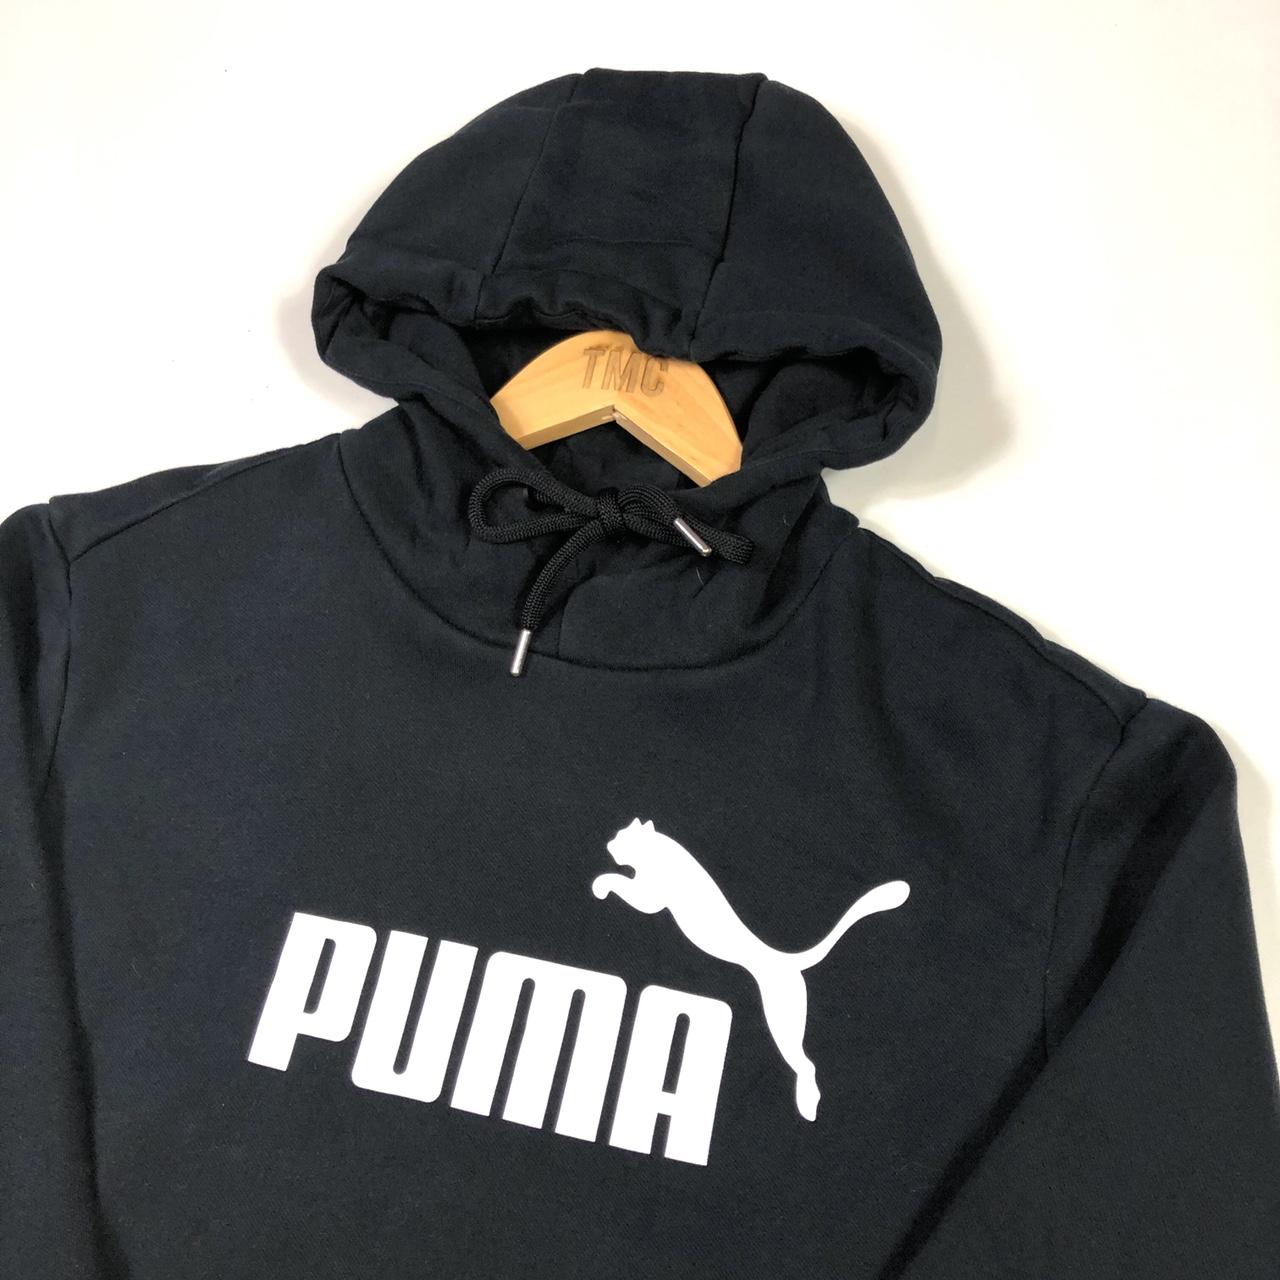 Vintage Puma Pullover Hoodie Sweatshirt Jumper Black... - Depop